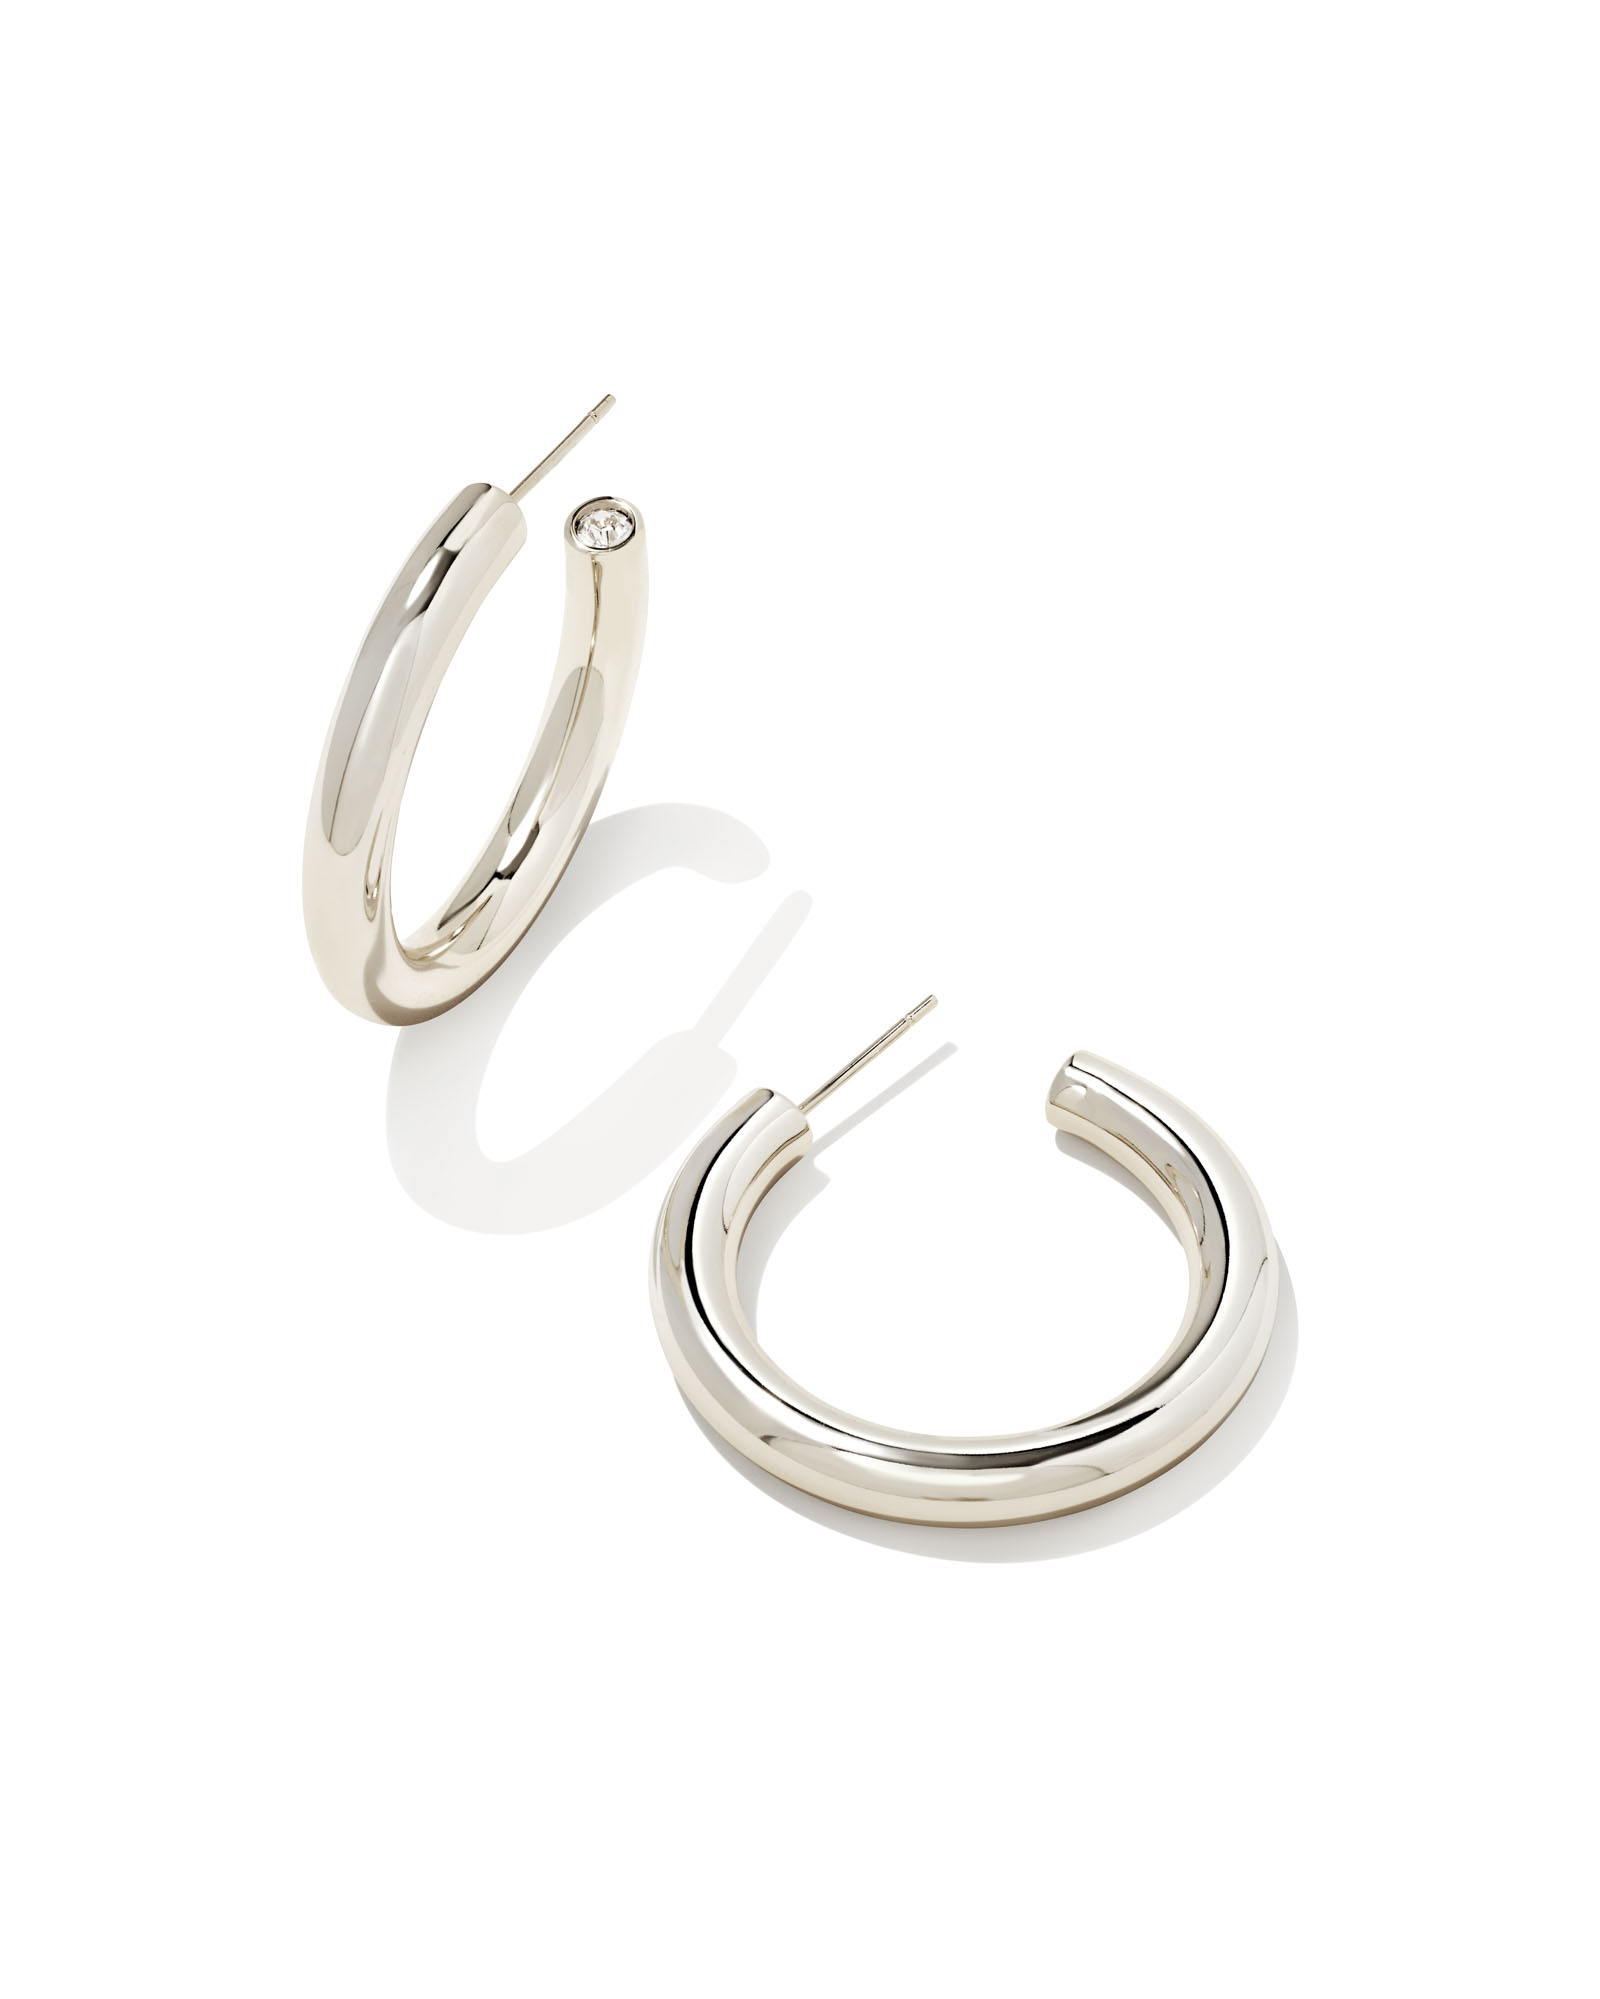 Earring Hook in Sterling Silver | Kendra Scott